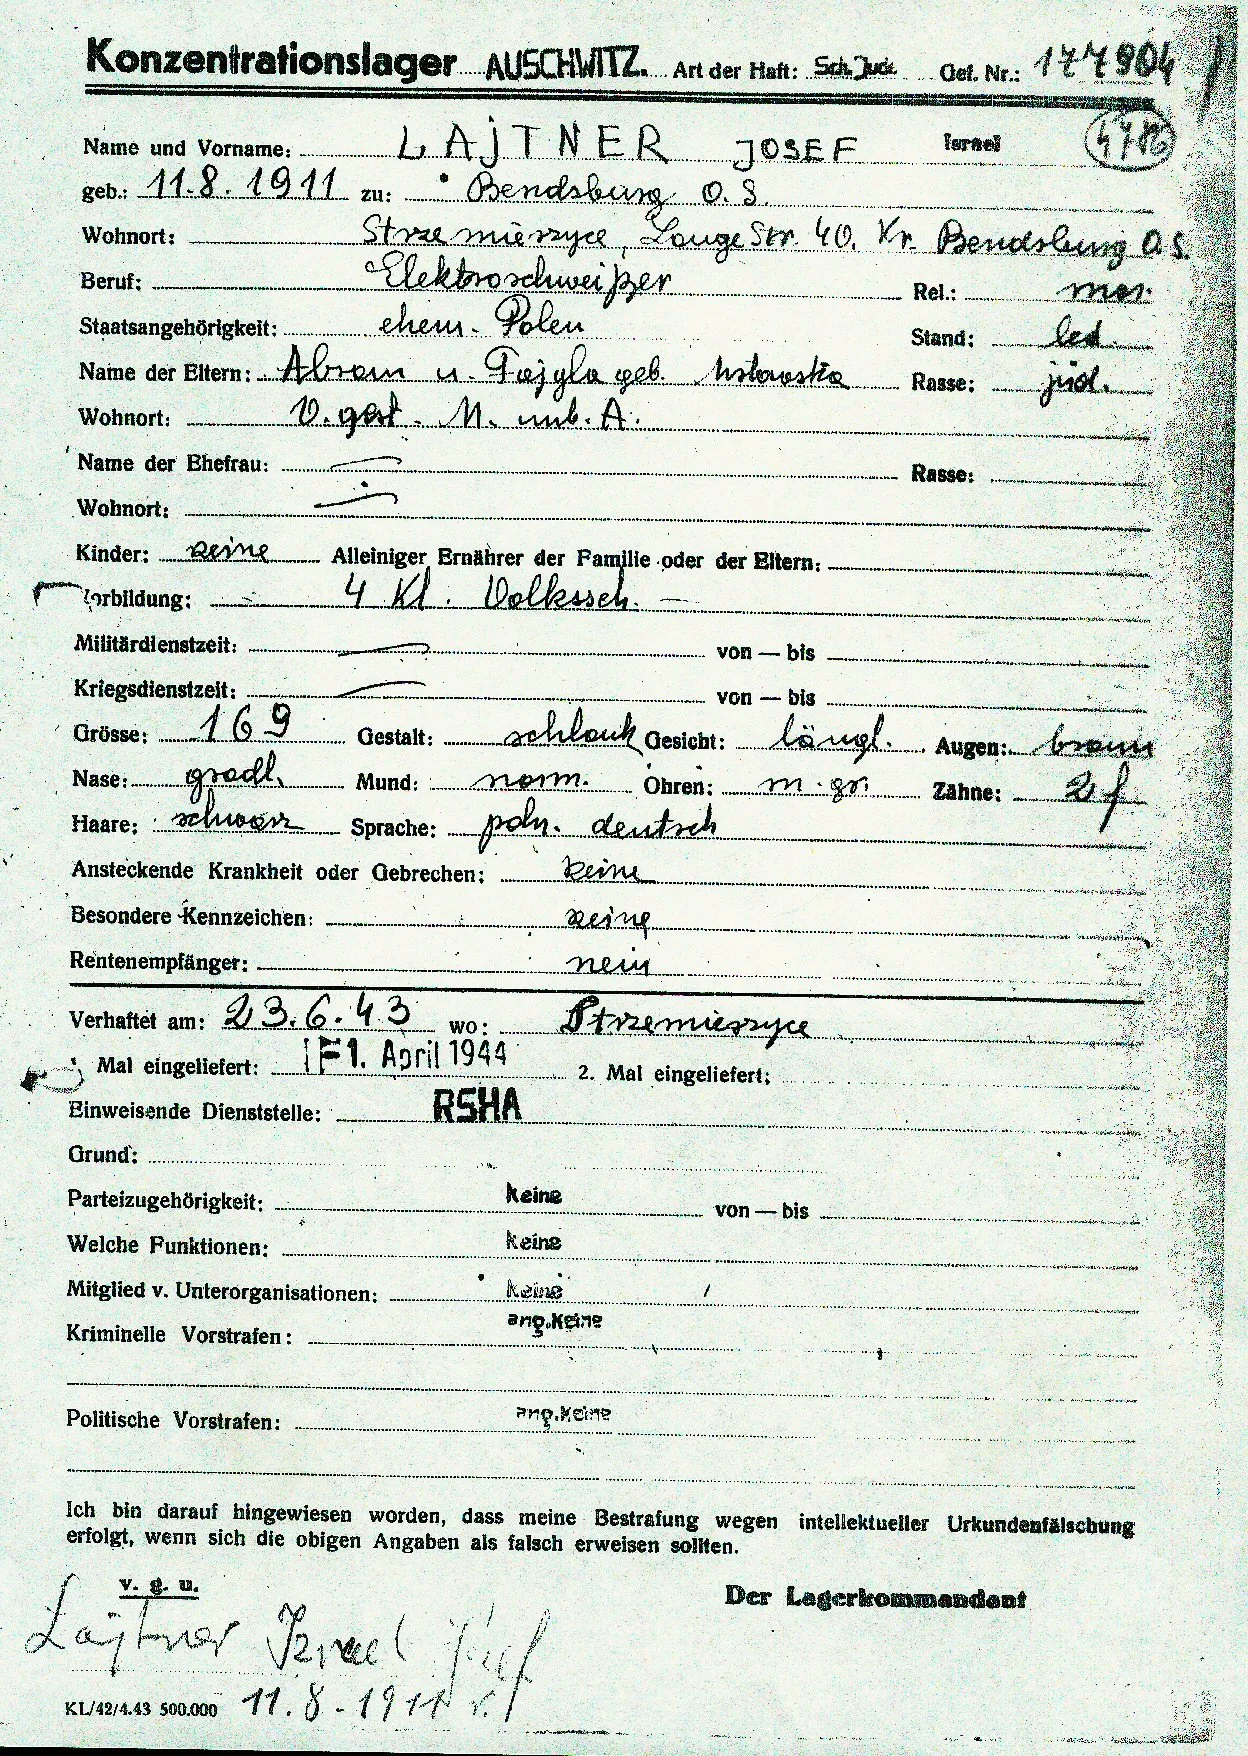 Auschwitz prisoner registration form signed by Josef Lajtner 